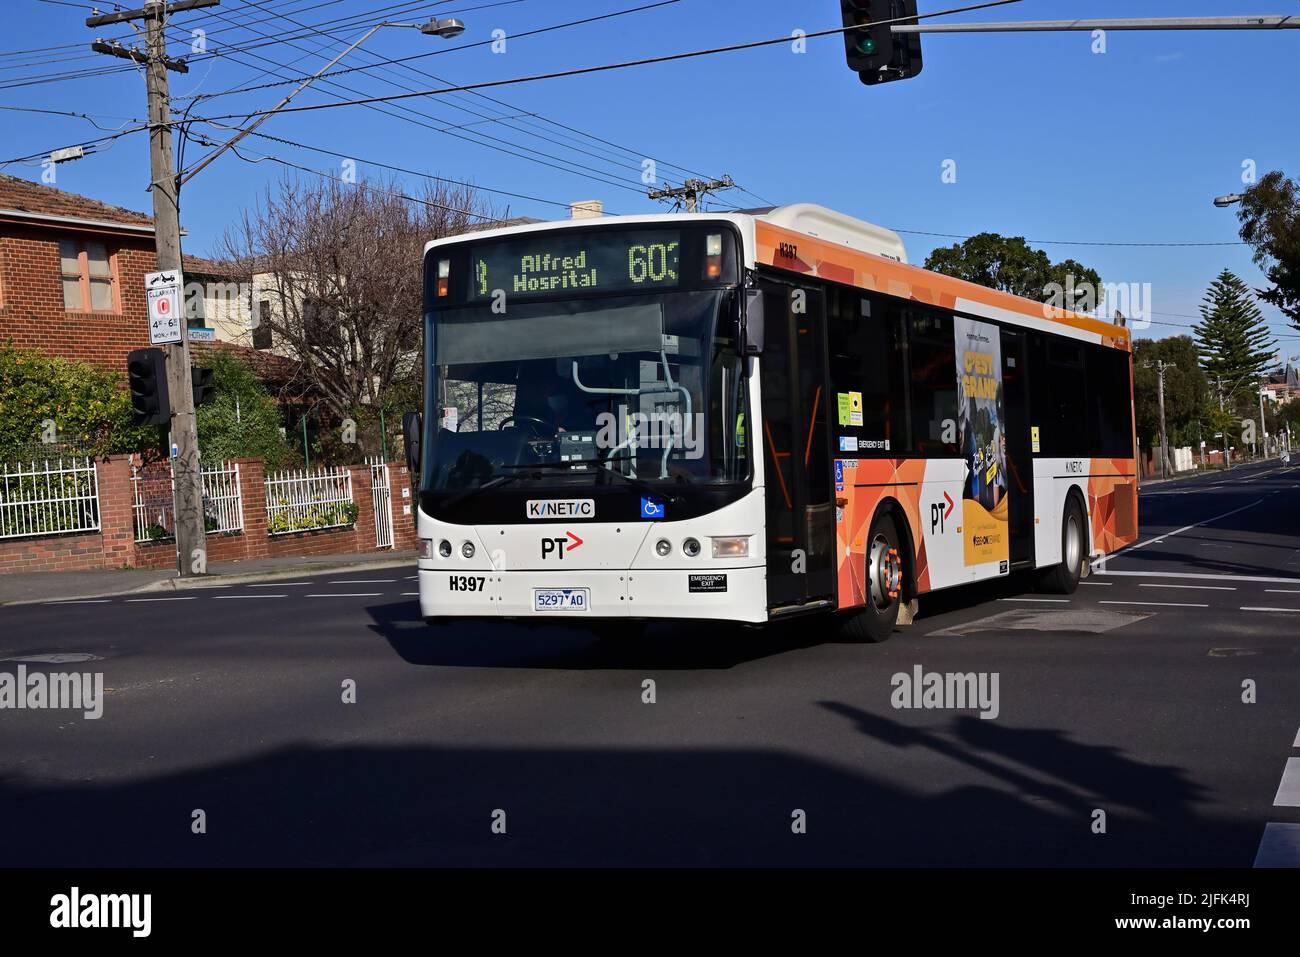 Le service de bus Melbourne route 603, avec la marque Kinetic et PTV actuelle, se déplaçant le long de Hotham St pendant une journée d'hiver claire Banque D'Images